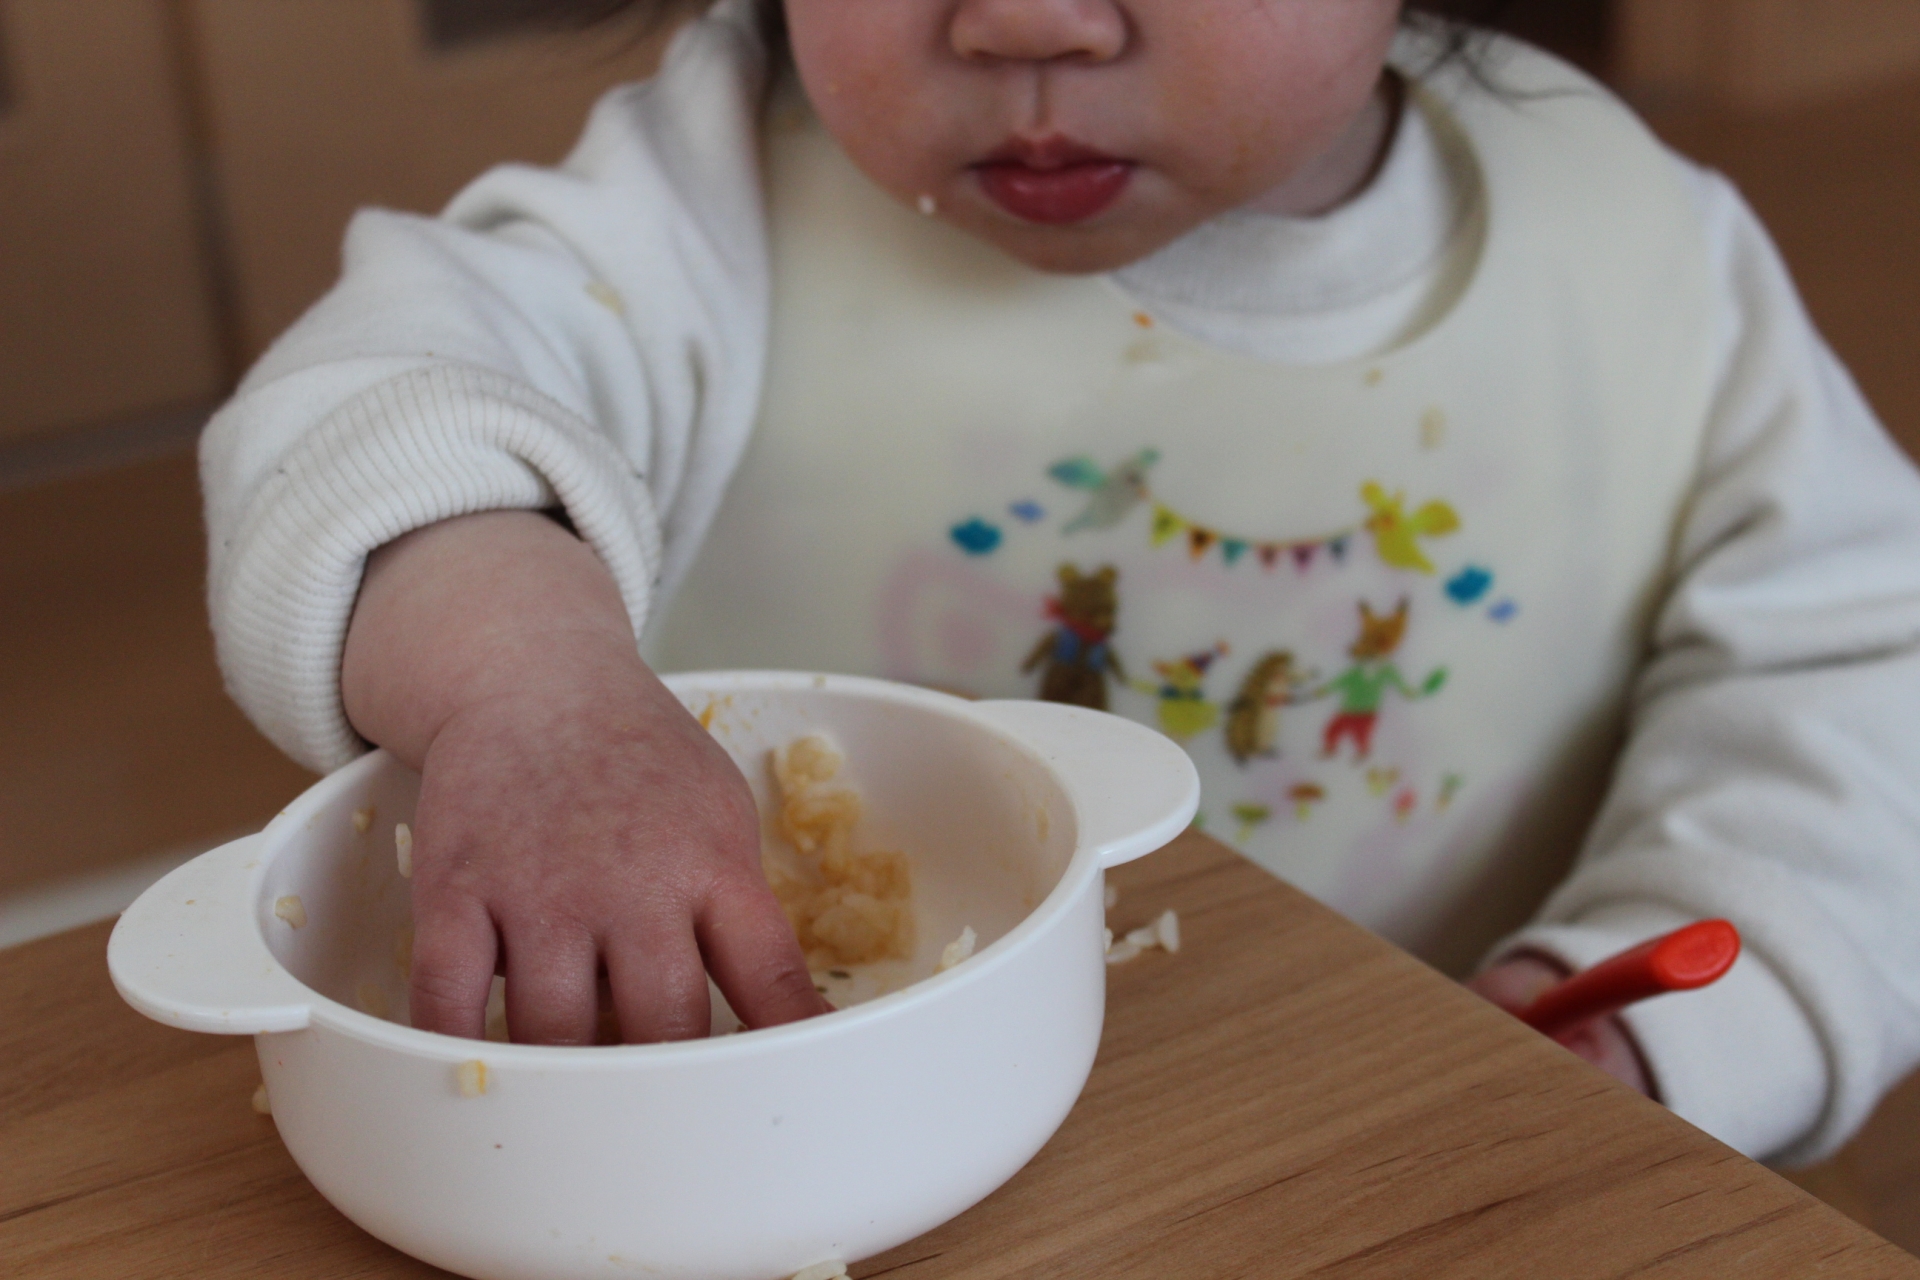 【赤ちゃんの手づかみ食べ】離乳食中期の赤ちゃんの食事について